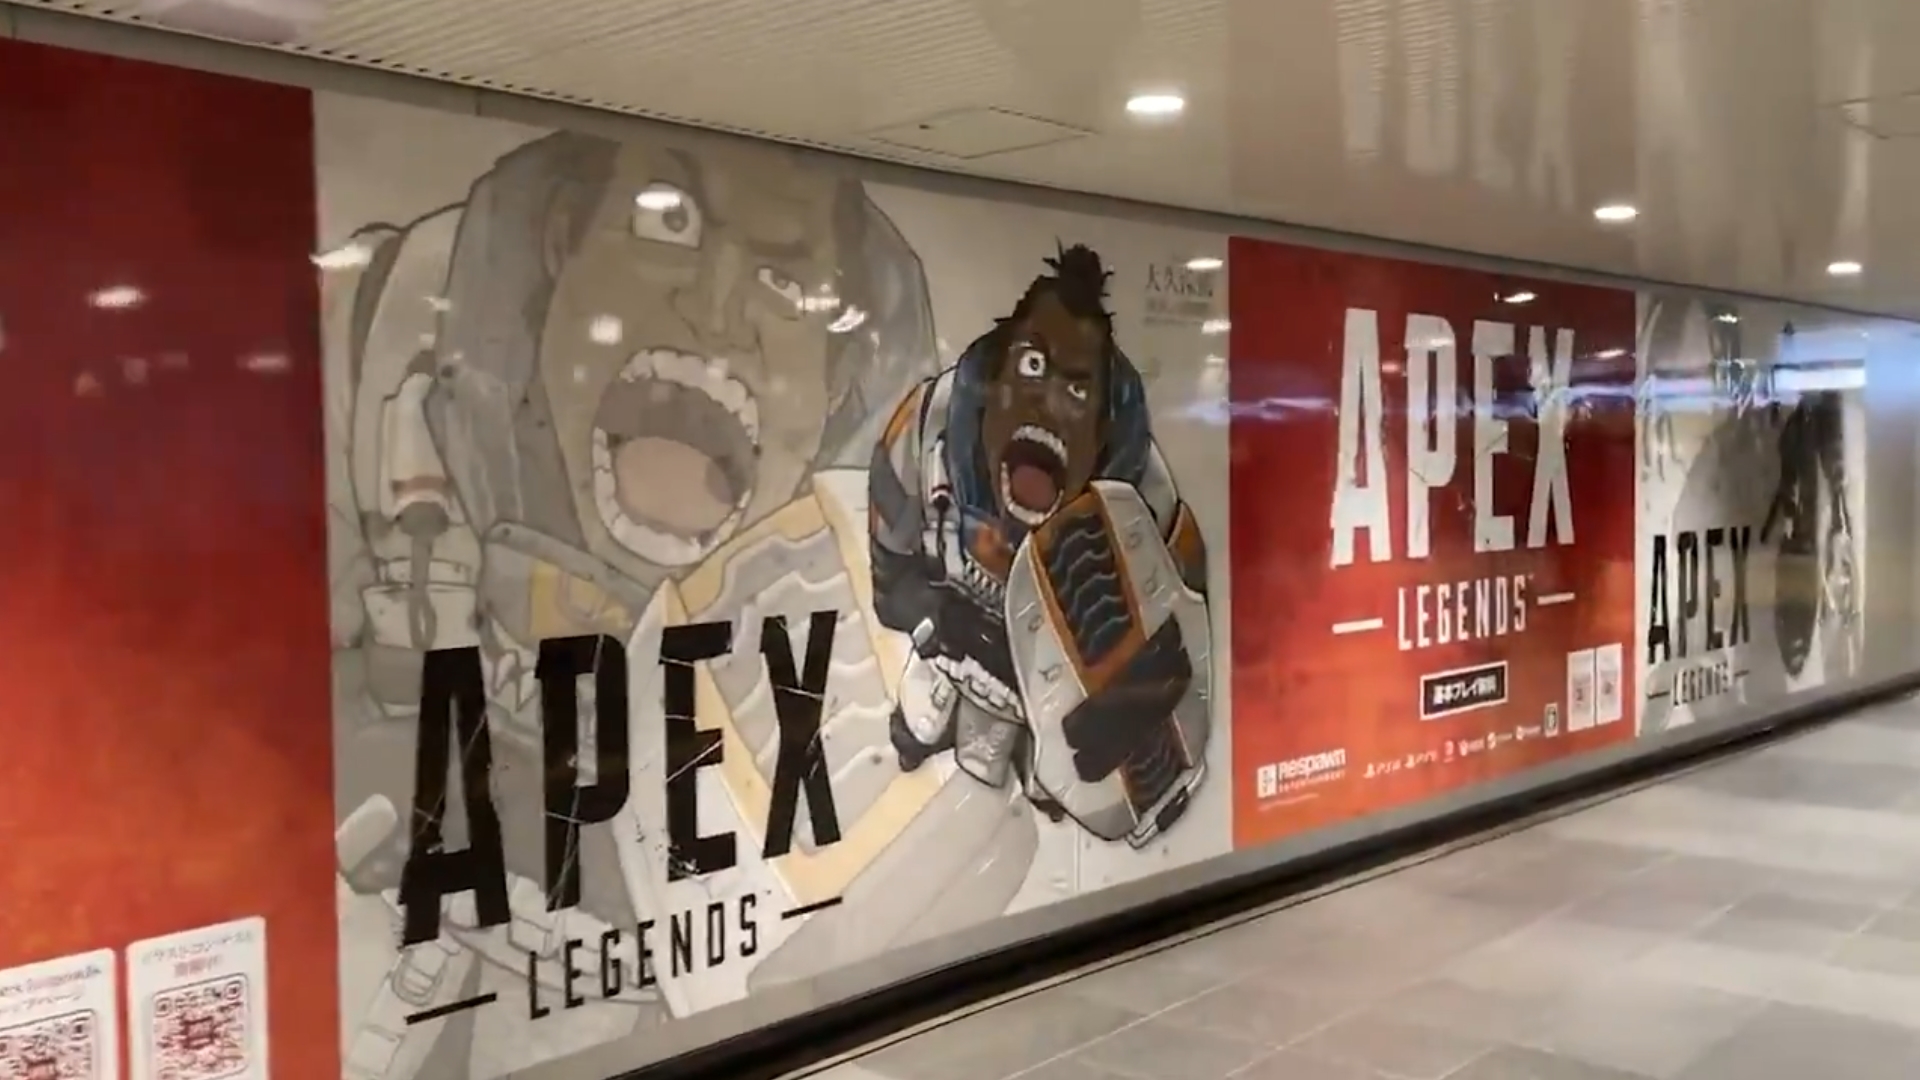 Apex シーズン8の開幕記念で 渋谷の道玄坂ハッピーボード にスペシャルコラボイラストが公開中 エーペックスレジェンズ攻略速報まとめ エペ速